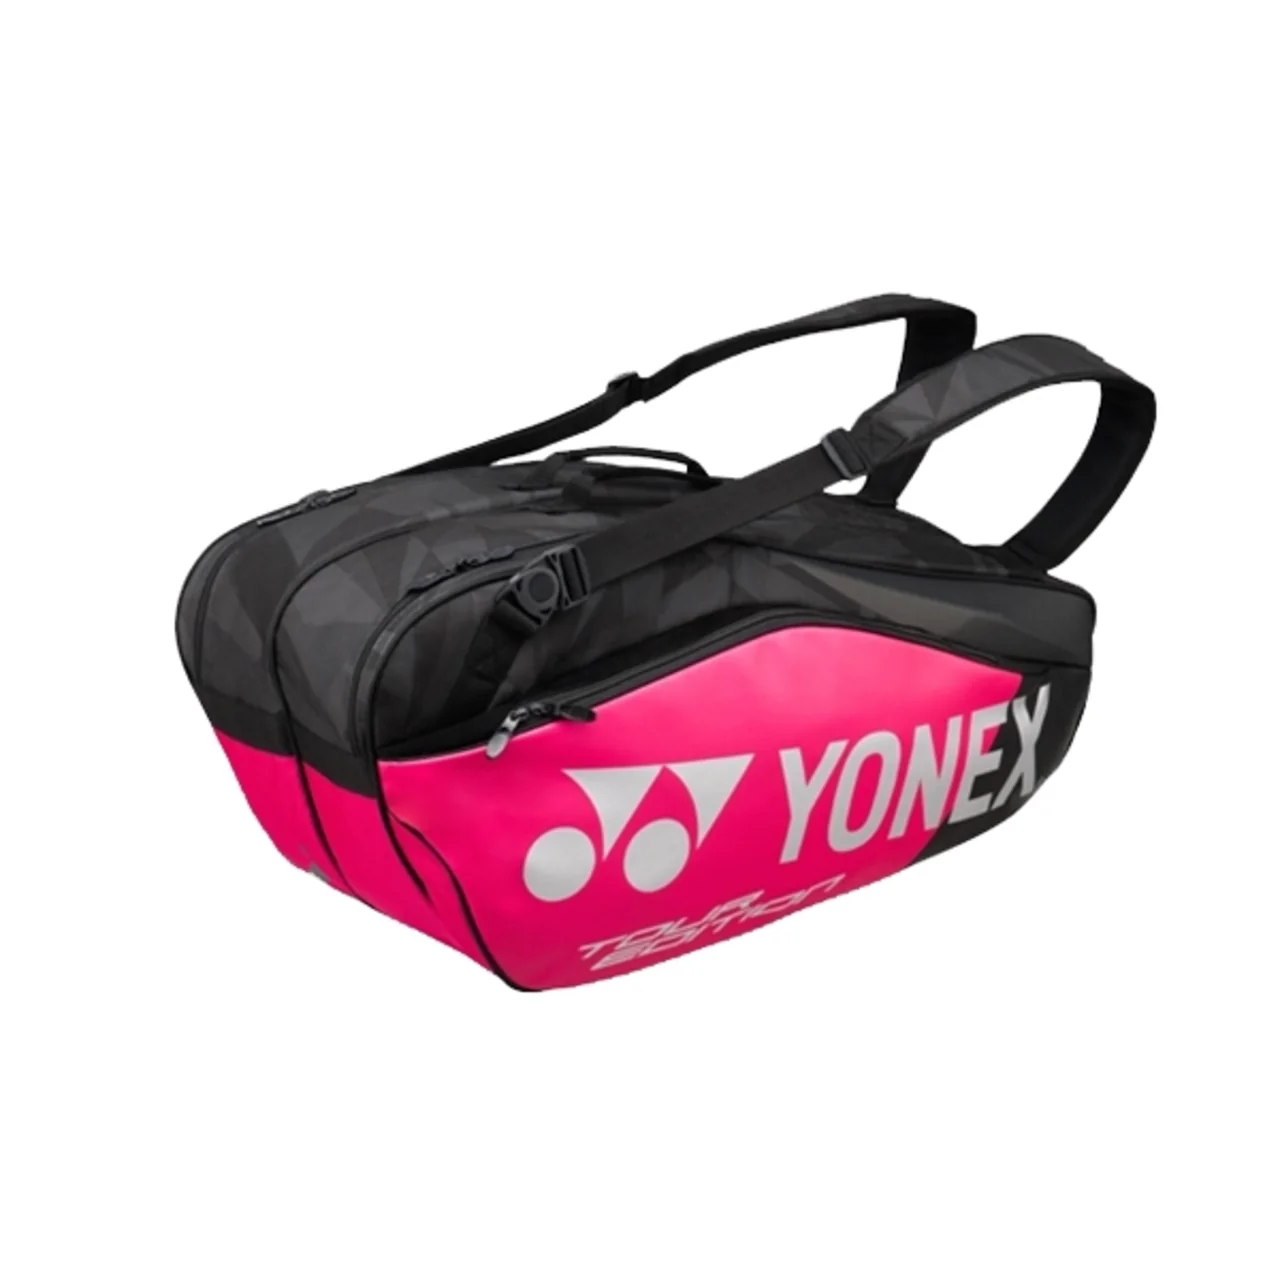 Yonex Pro Bag x6 Black/Pink